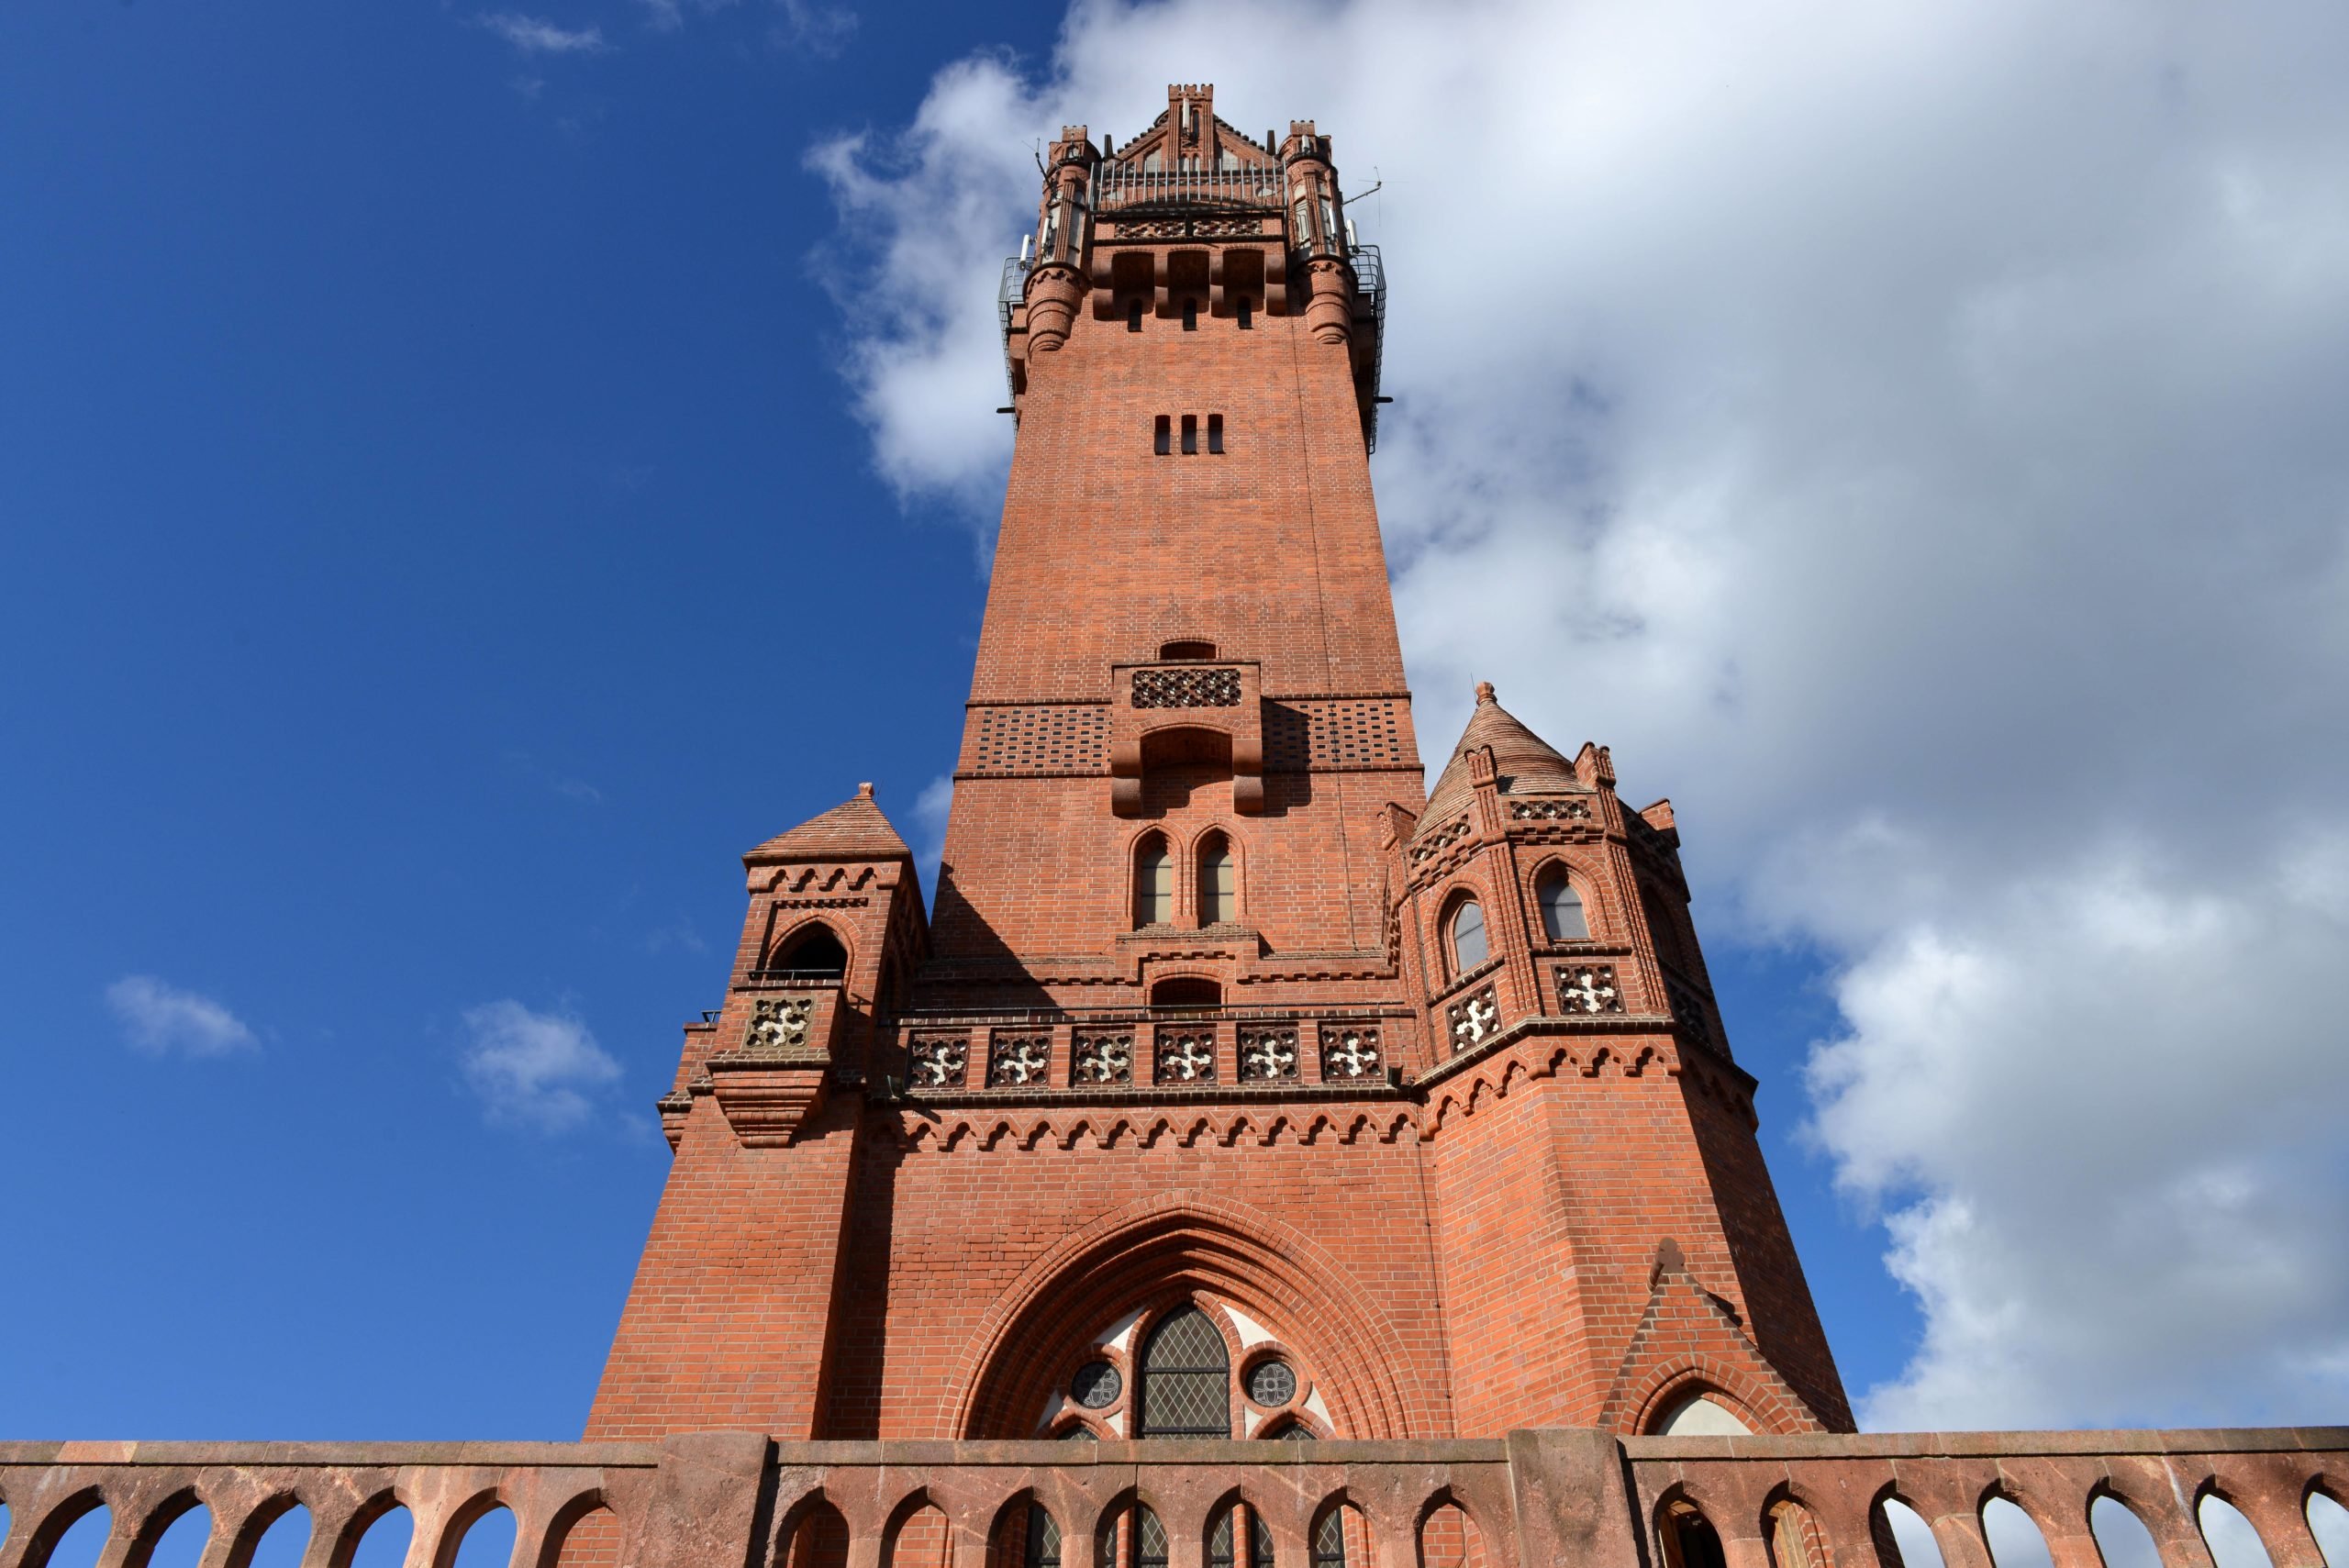 Beeindruckend: der Grunewaldturm. Einer unserer schönen Spaziergänge durch Berlin führt dorthin. Foto: Imago/Schöning